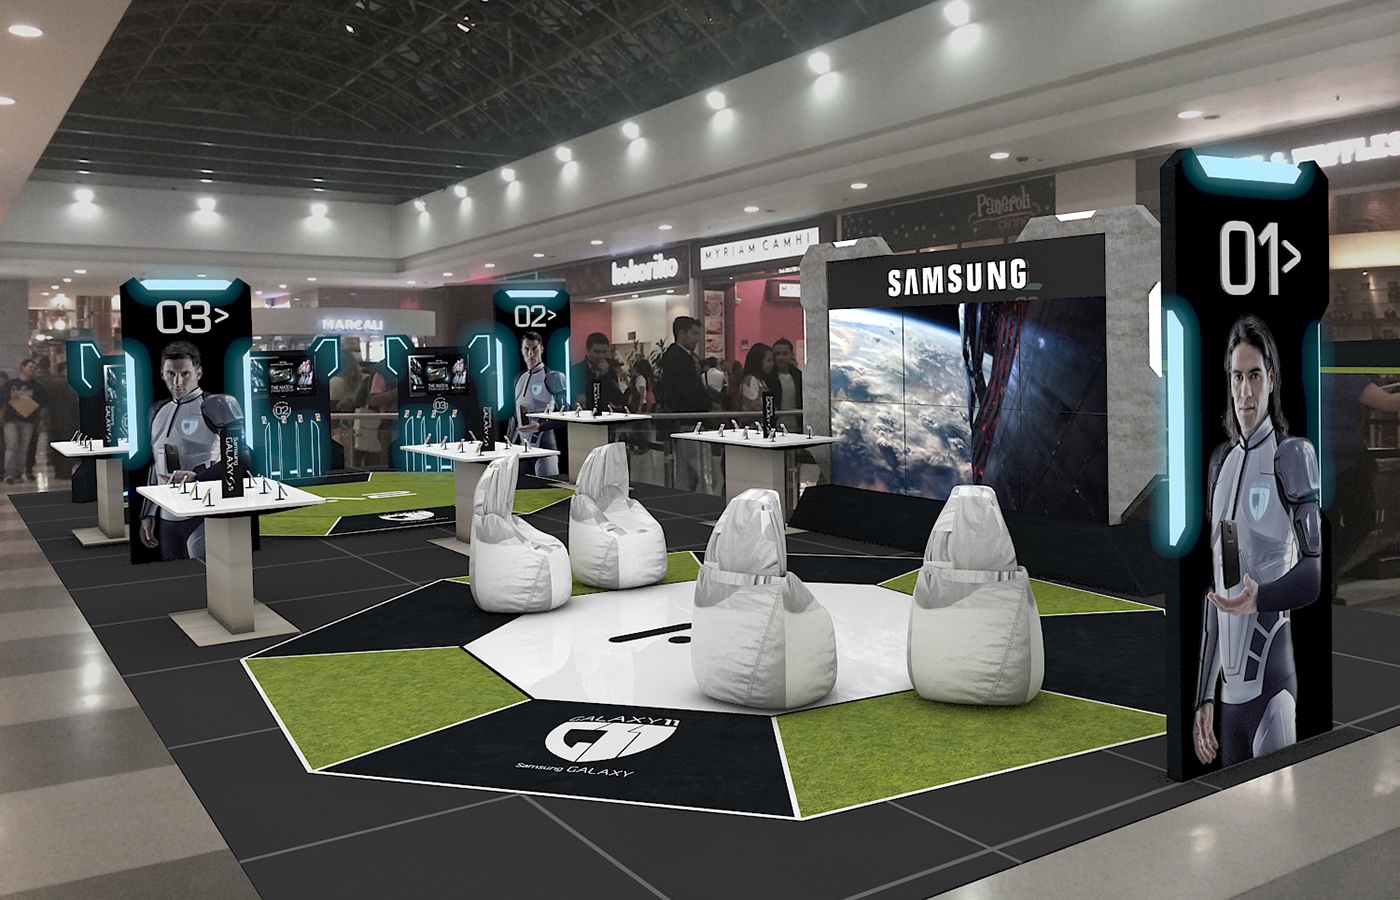 Samsung falcao Ronaldo messi G11 galaxy11 Games soccer Futbol WorldCup ball Interior design